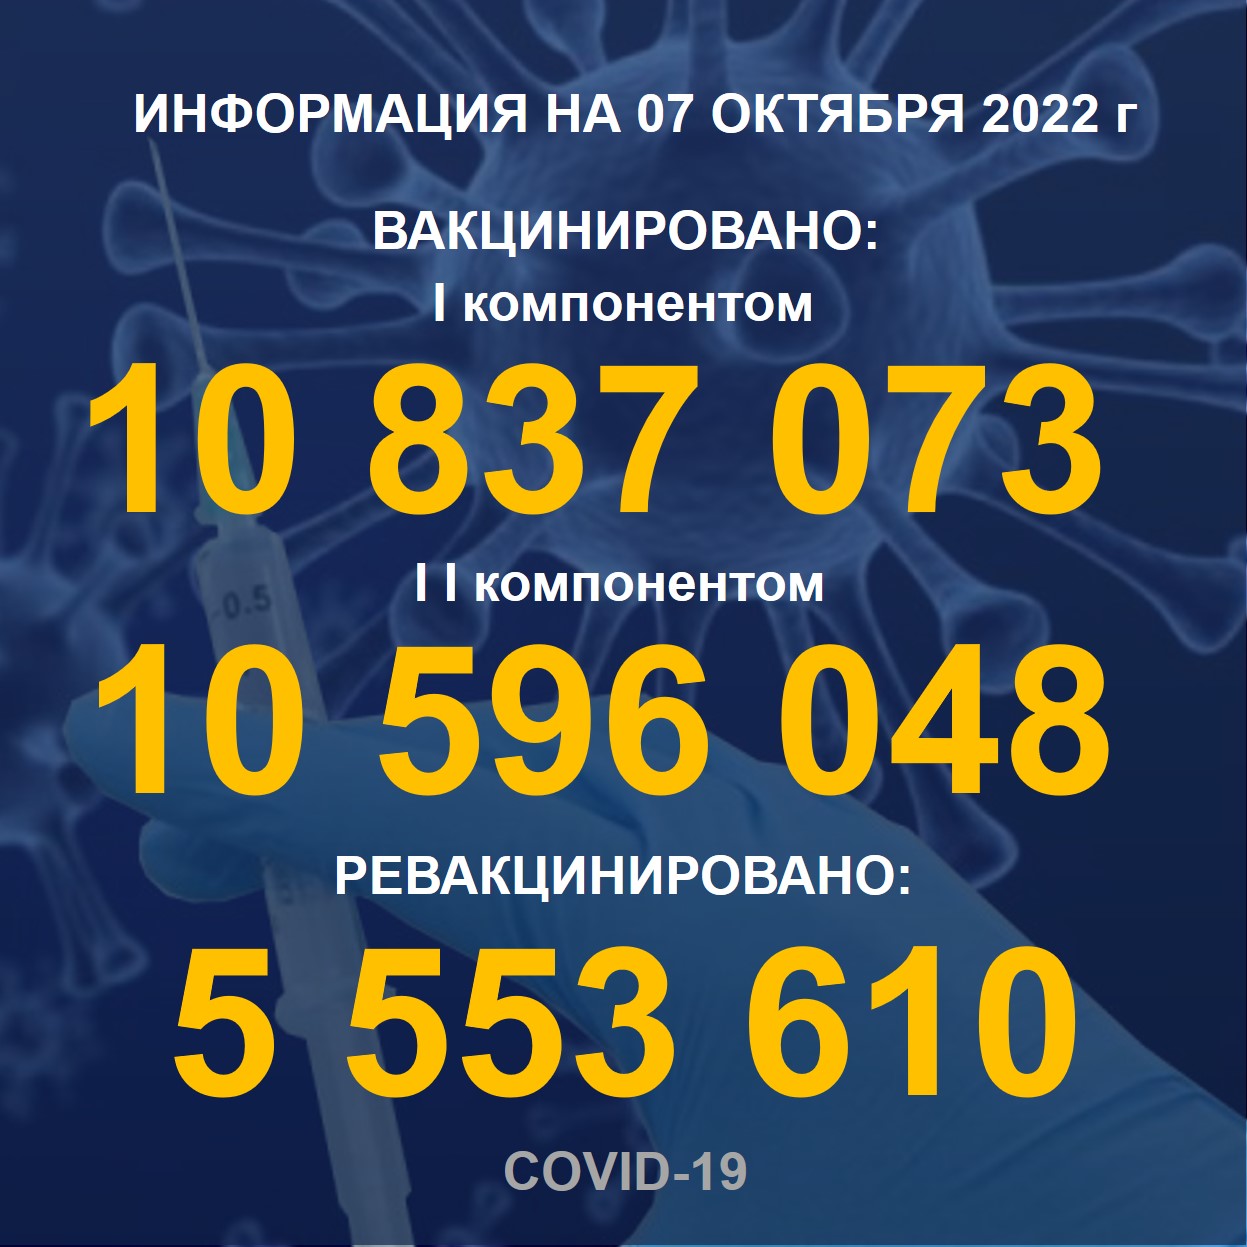 I компонентом 10,837,073   человек провакцинировано в Казахстане на 07.10.2022 г, II компонентом 10,596,048 человек. Ревакцинировано – 5,553,610